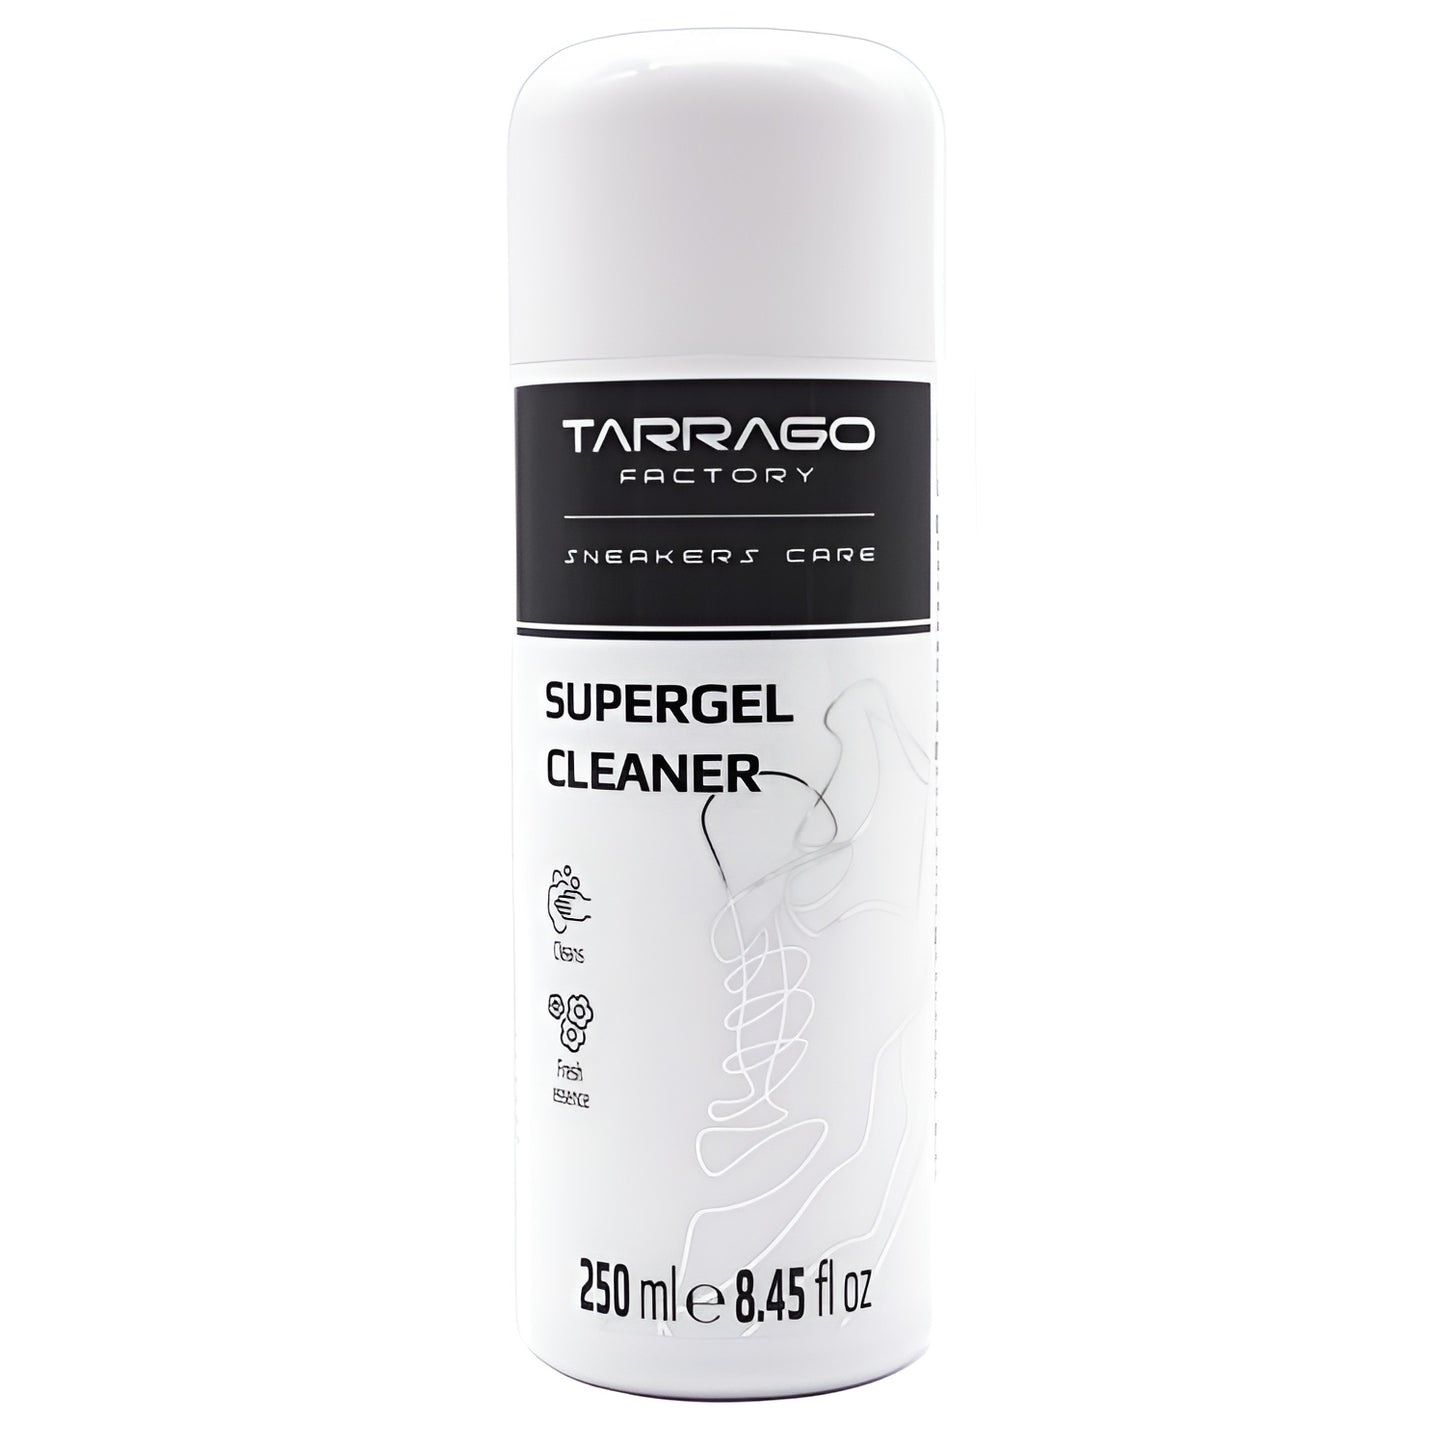 Tarrago Sneakers Super Gel Cleaner